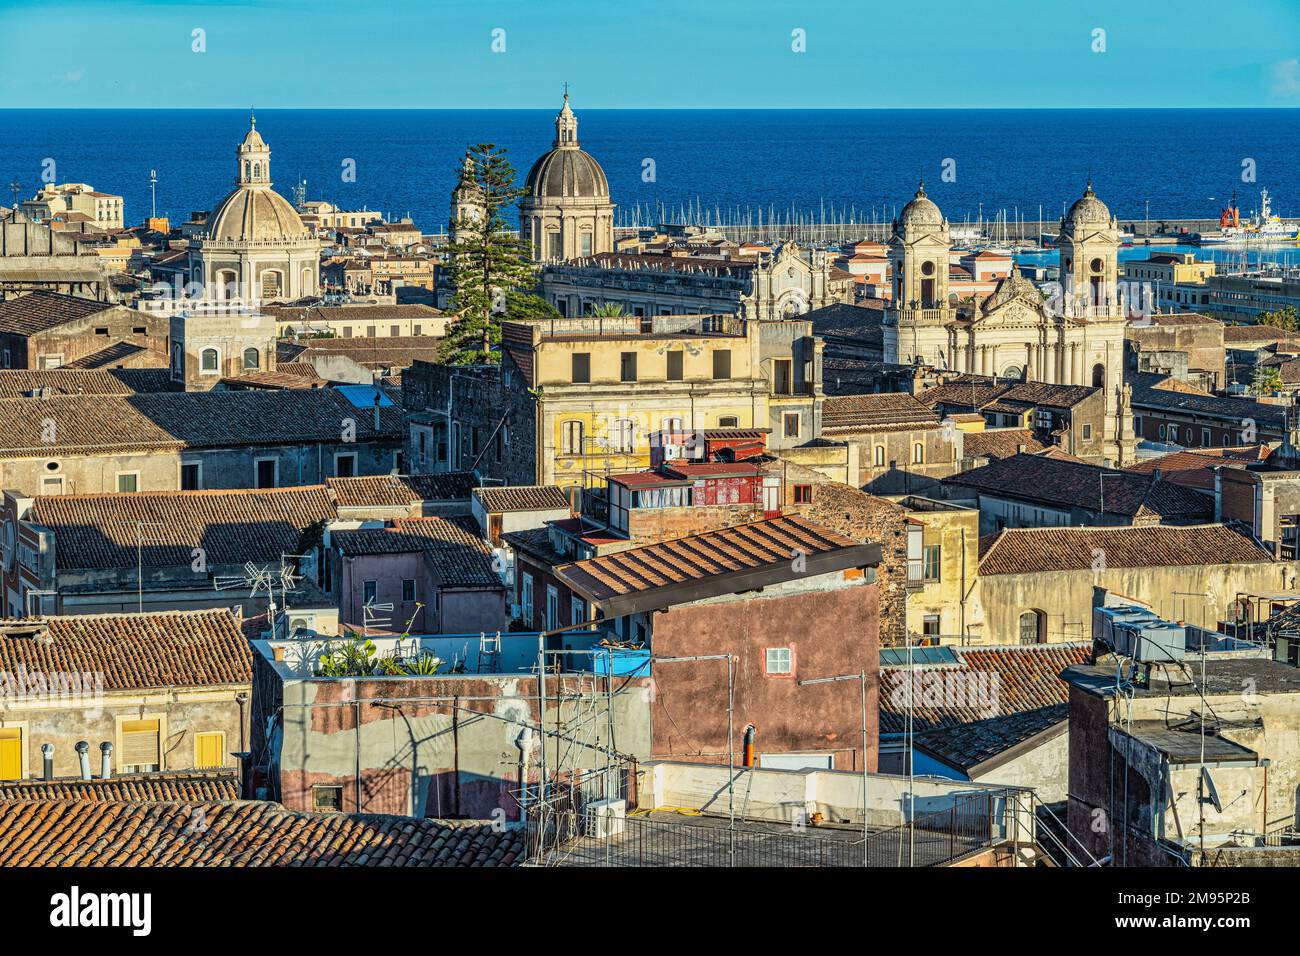 Vue aérienne sur les toits, les dômes et le clocher de la basilique de la cathédrale de Sant'Agata et de l'abbaye de Sant'Agata. Catane, Sicile, Italie, Europe Banque D'Images